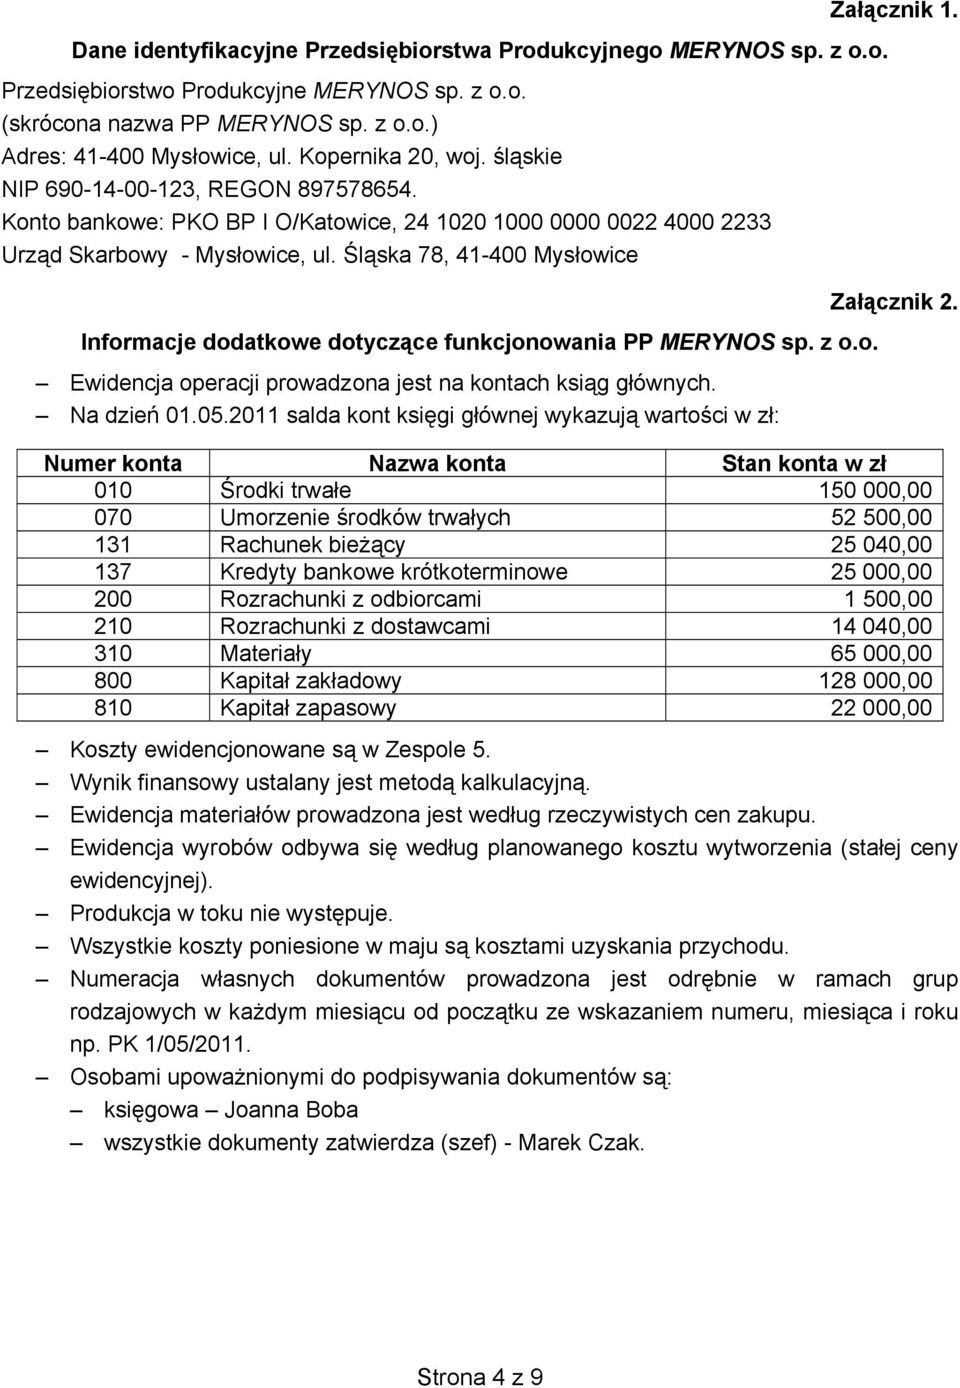 Śląska 78, 41-400 Mysłowice Informacje dodatkowe dotyczące funkcjonowania PP MERYNOS sp. z o.o. Ewidencja operacji prowadzona jest na kontach ksiąg głównych. Na dzień 01.05.